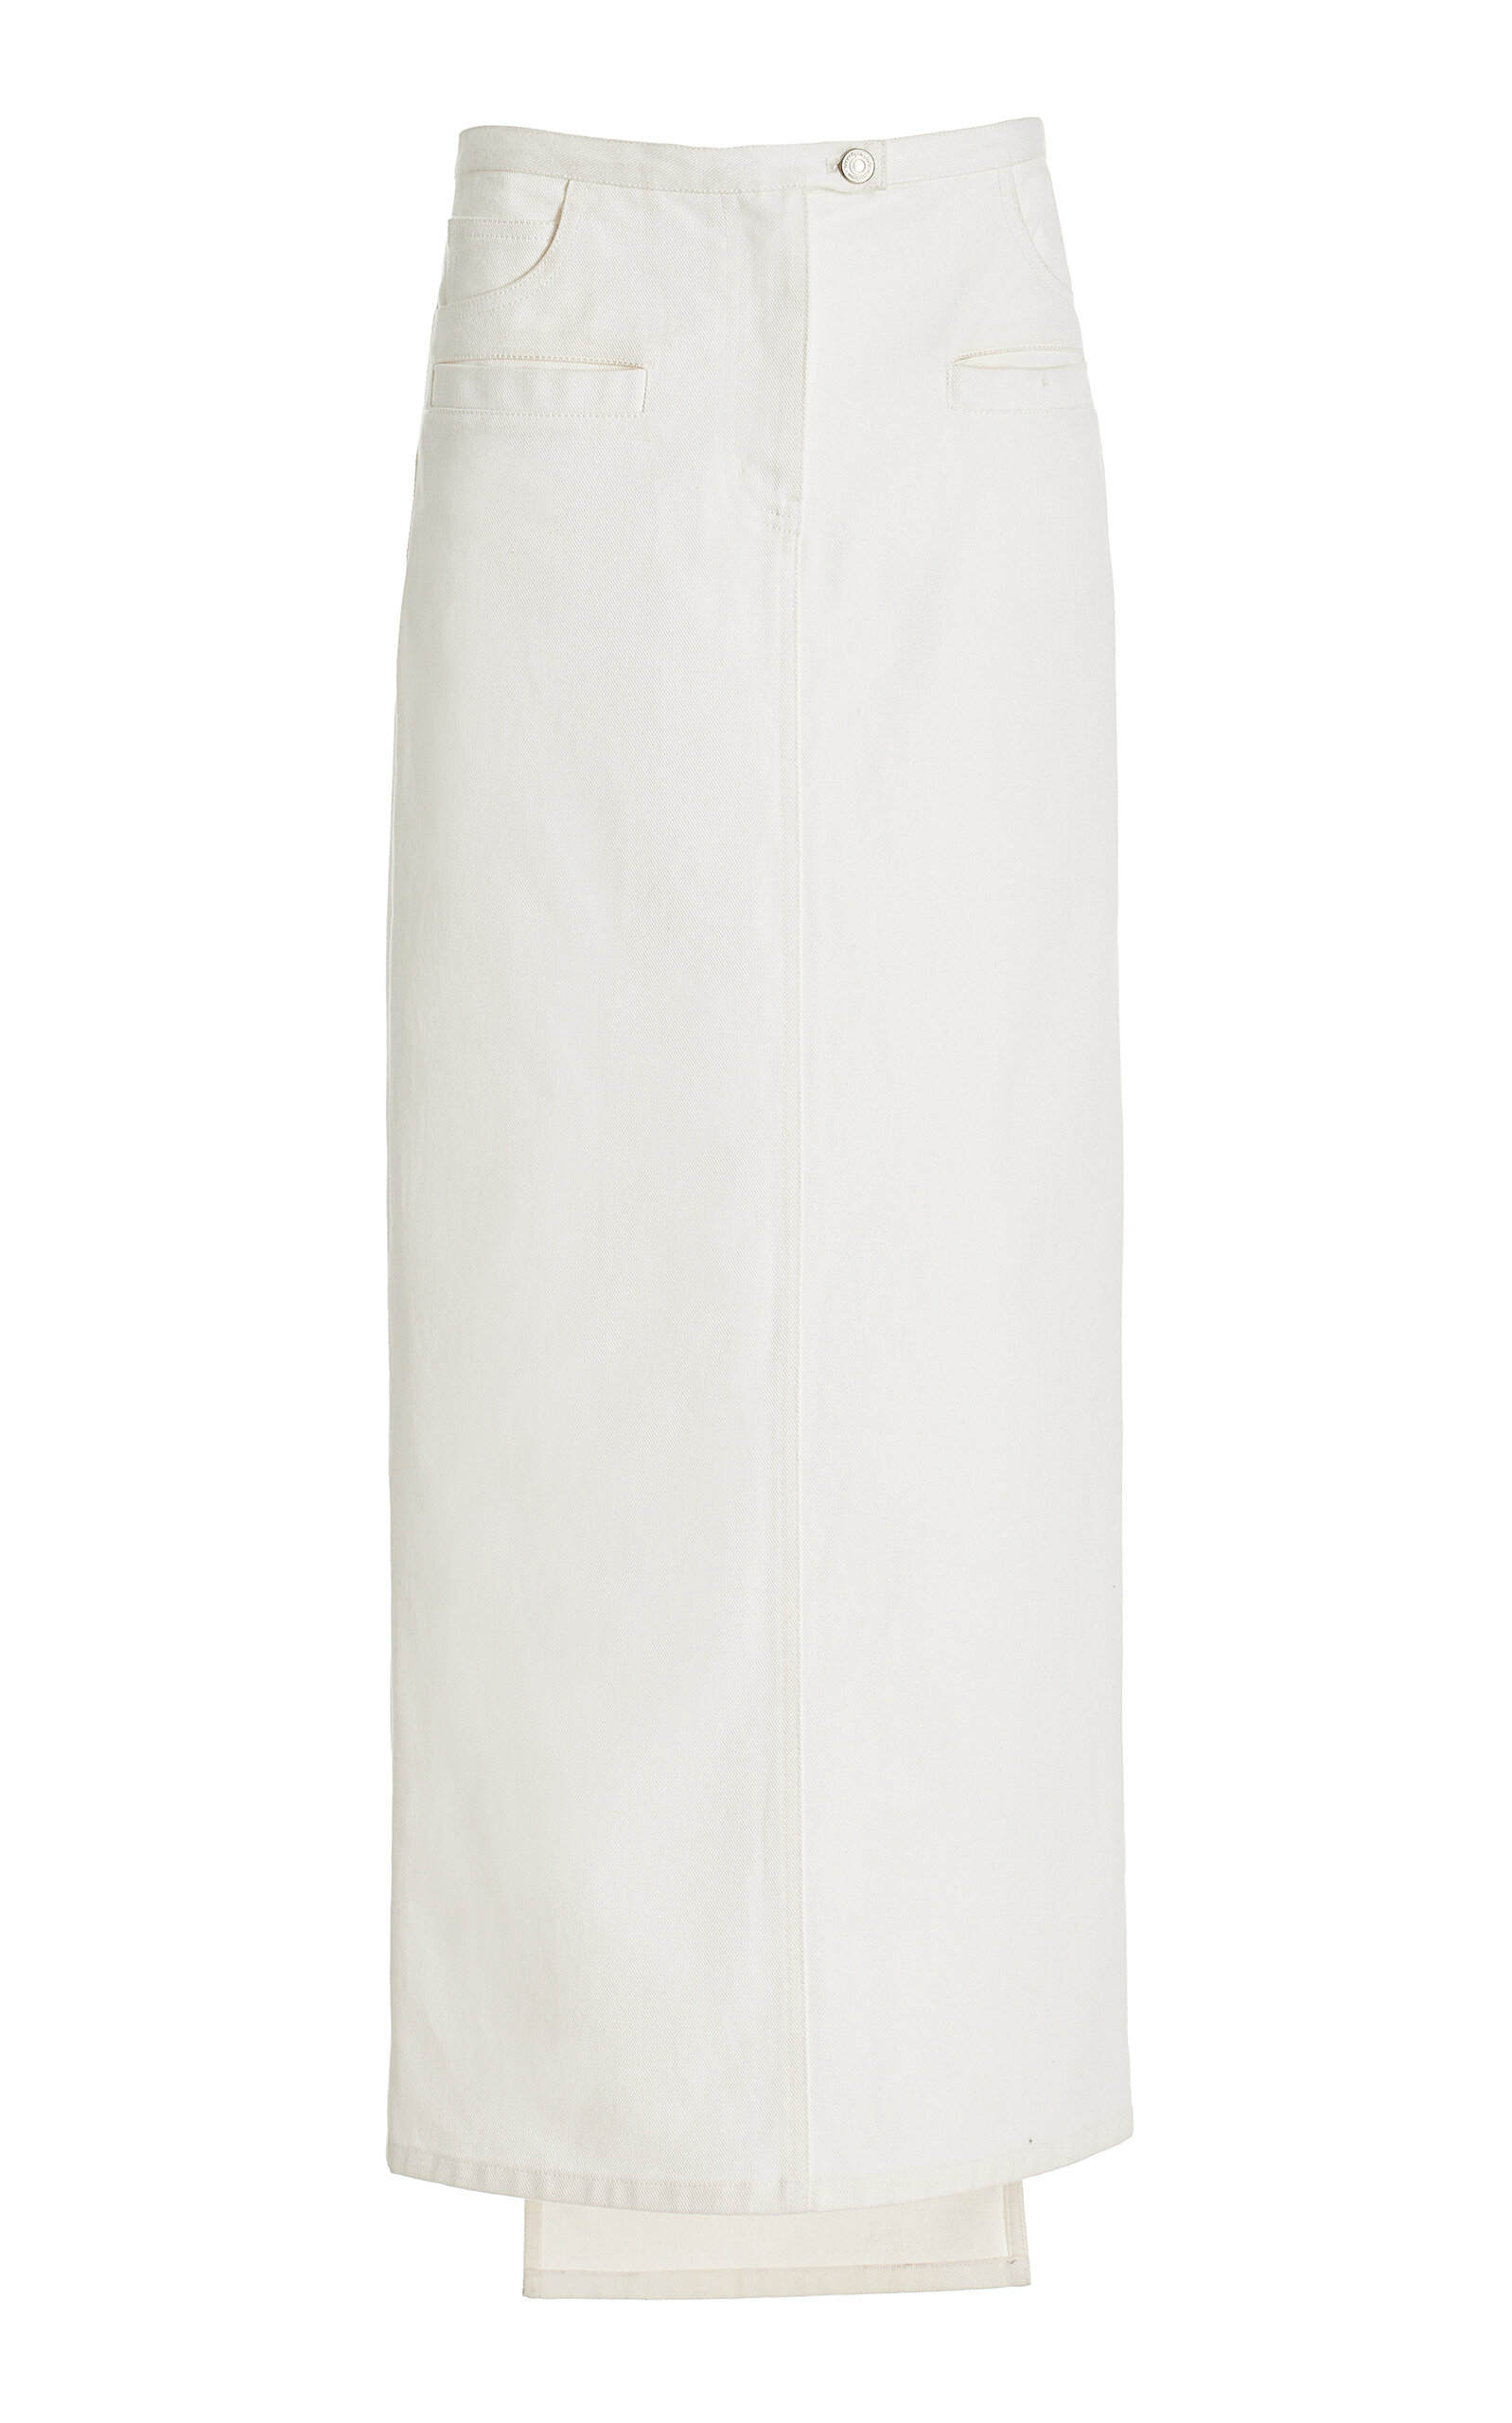 Courrèges Heritage White Denim Long Skirt